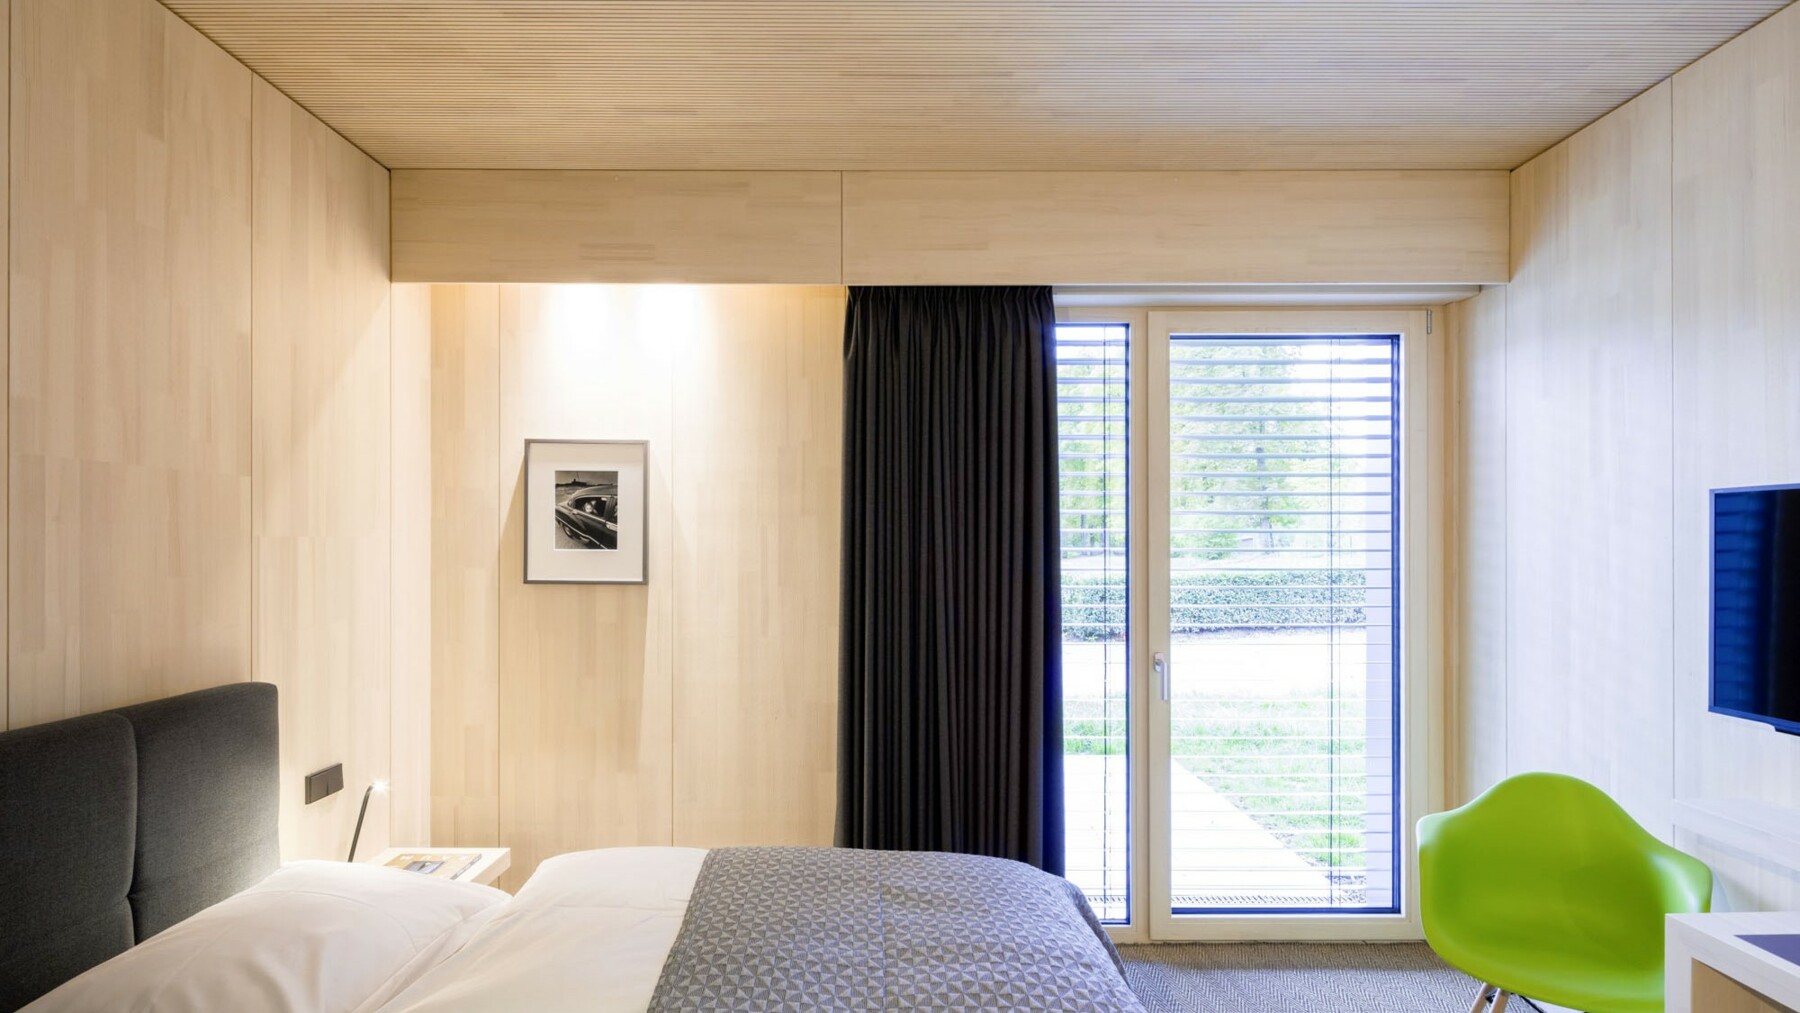 Brettsperrholzelemente in Sichtqualität im Hotelzimmer von Schloss Auel in Lohmar